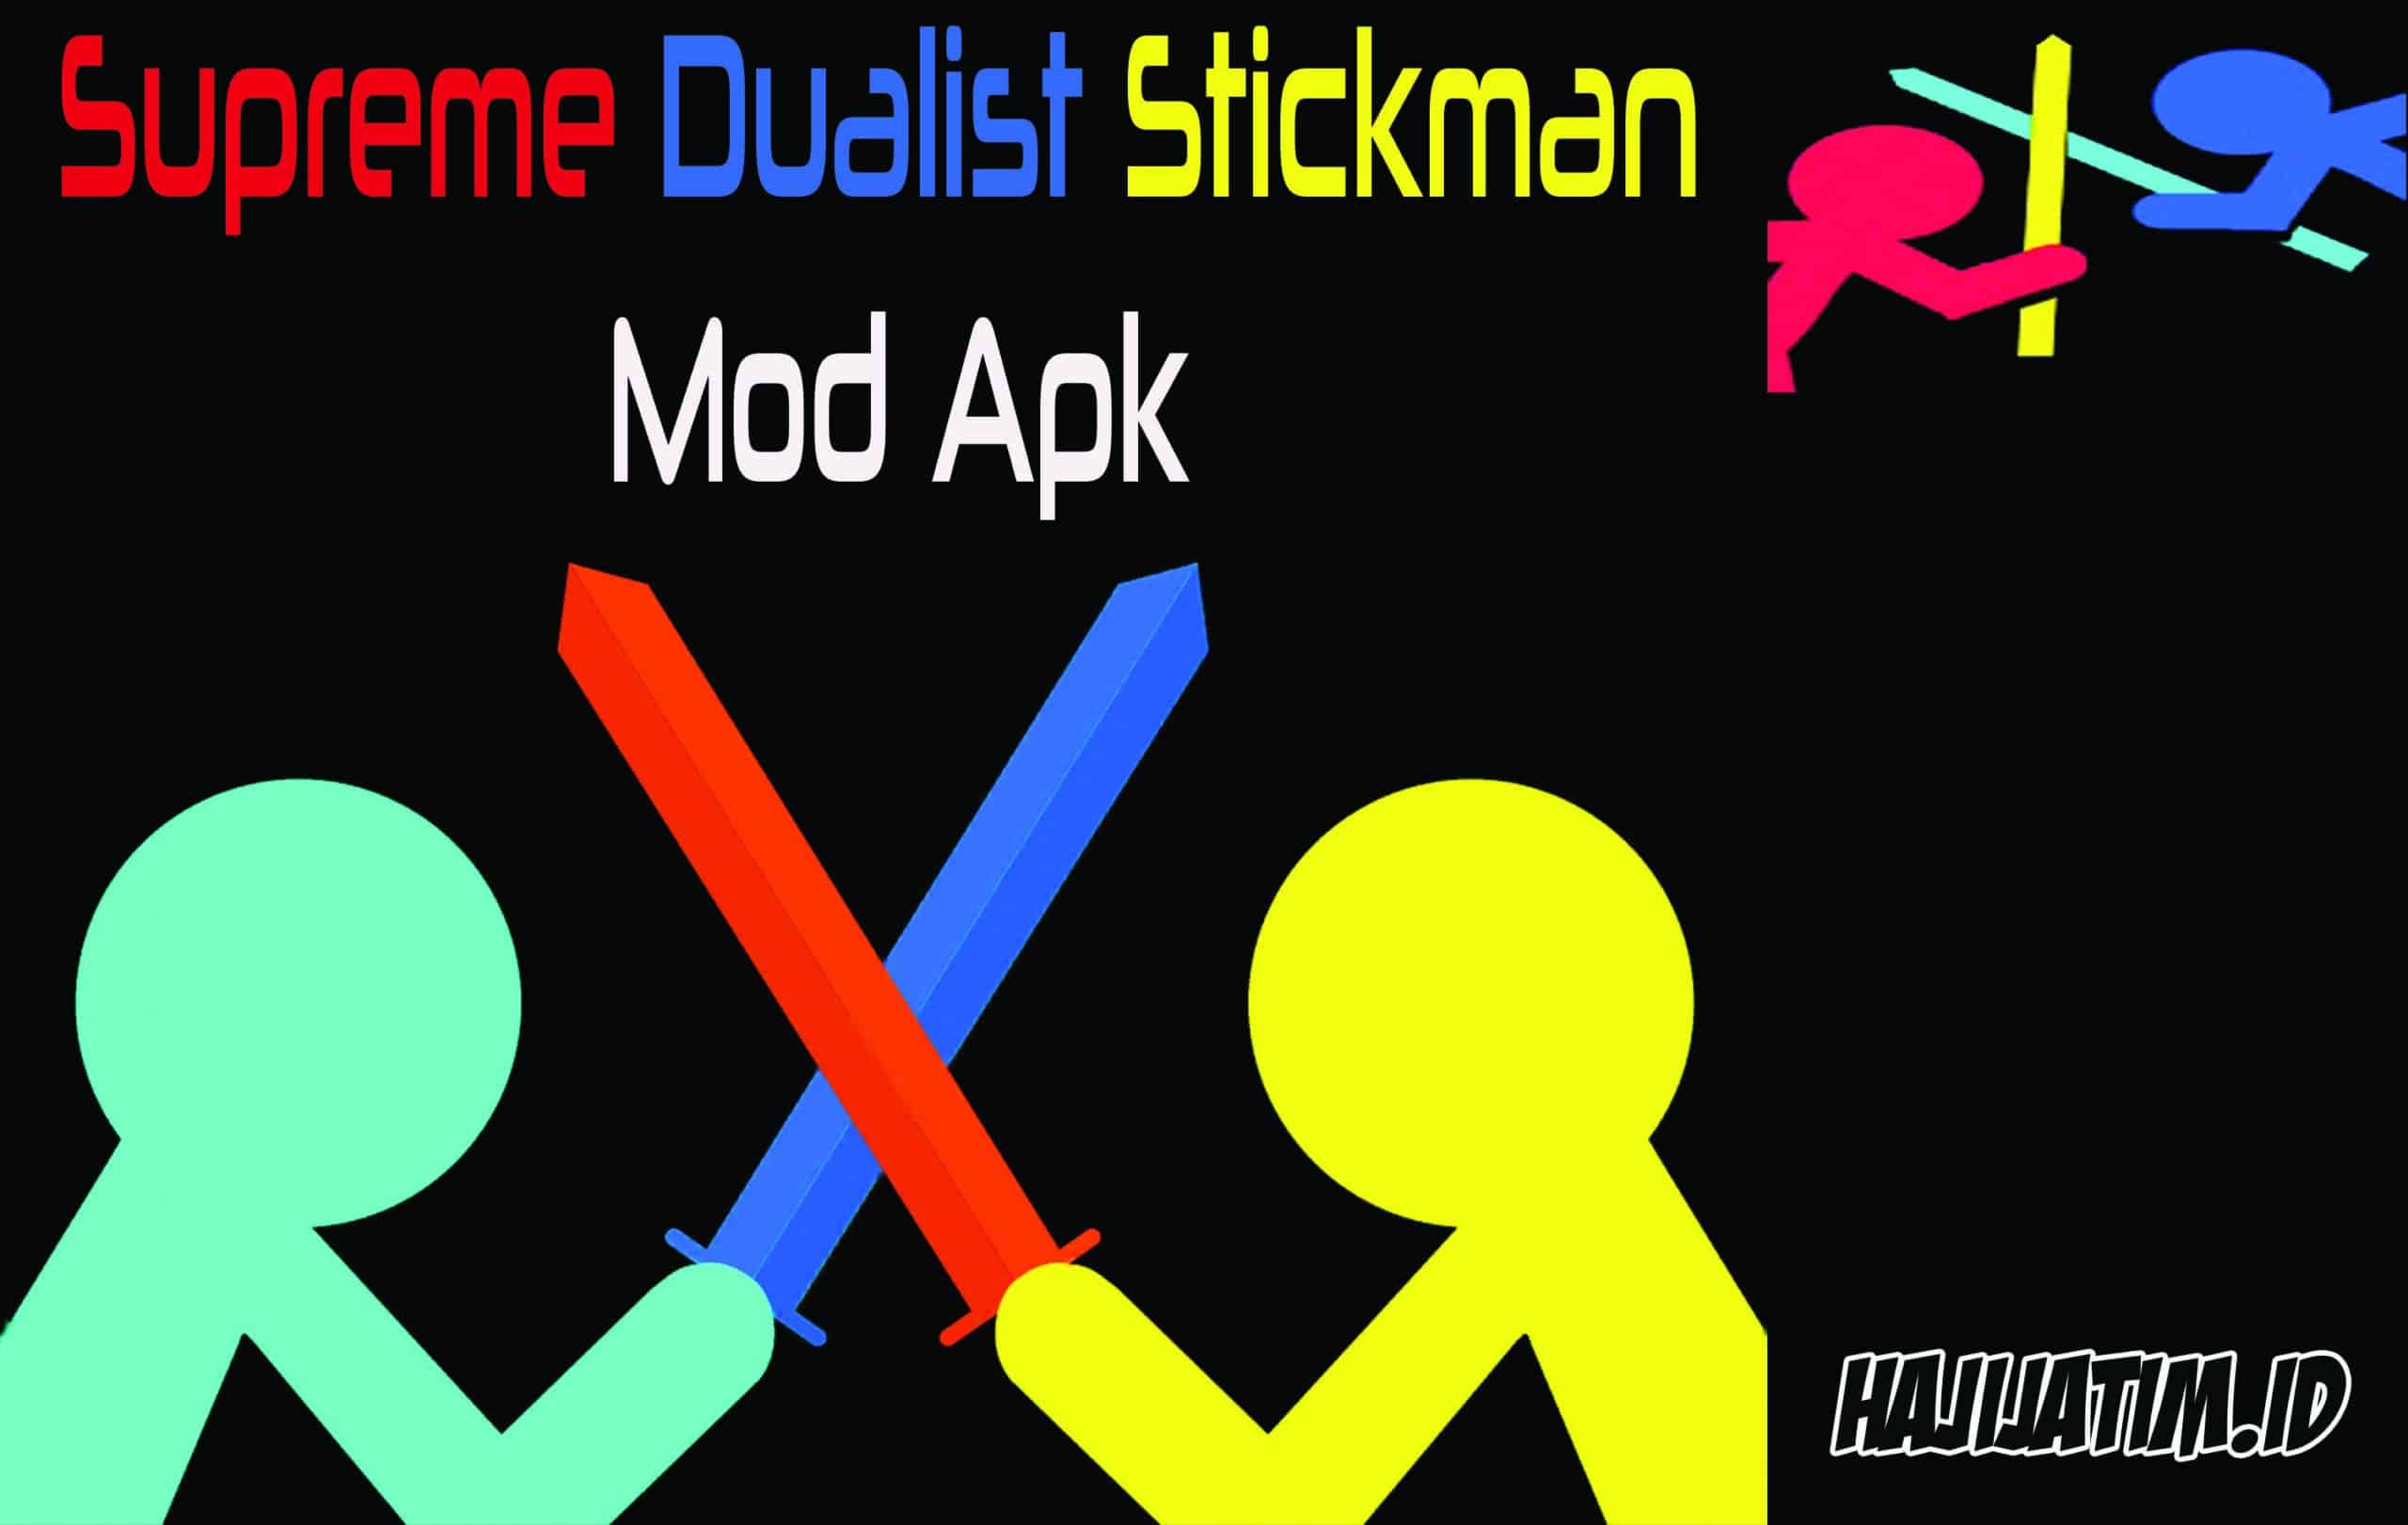 Supreme Dualist Stickman Mod Apk